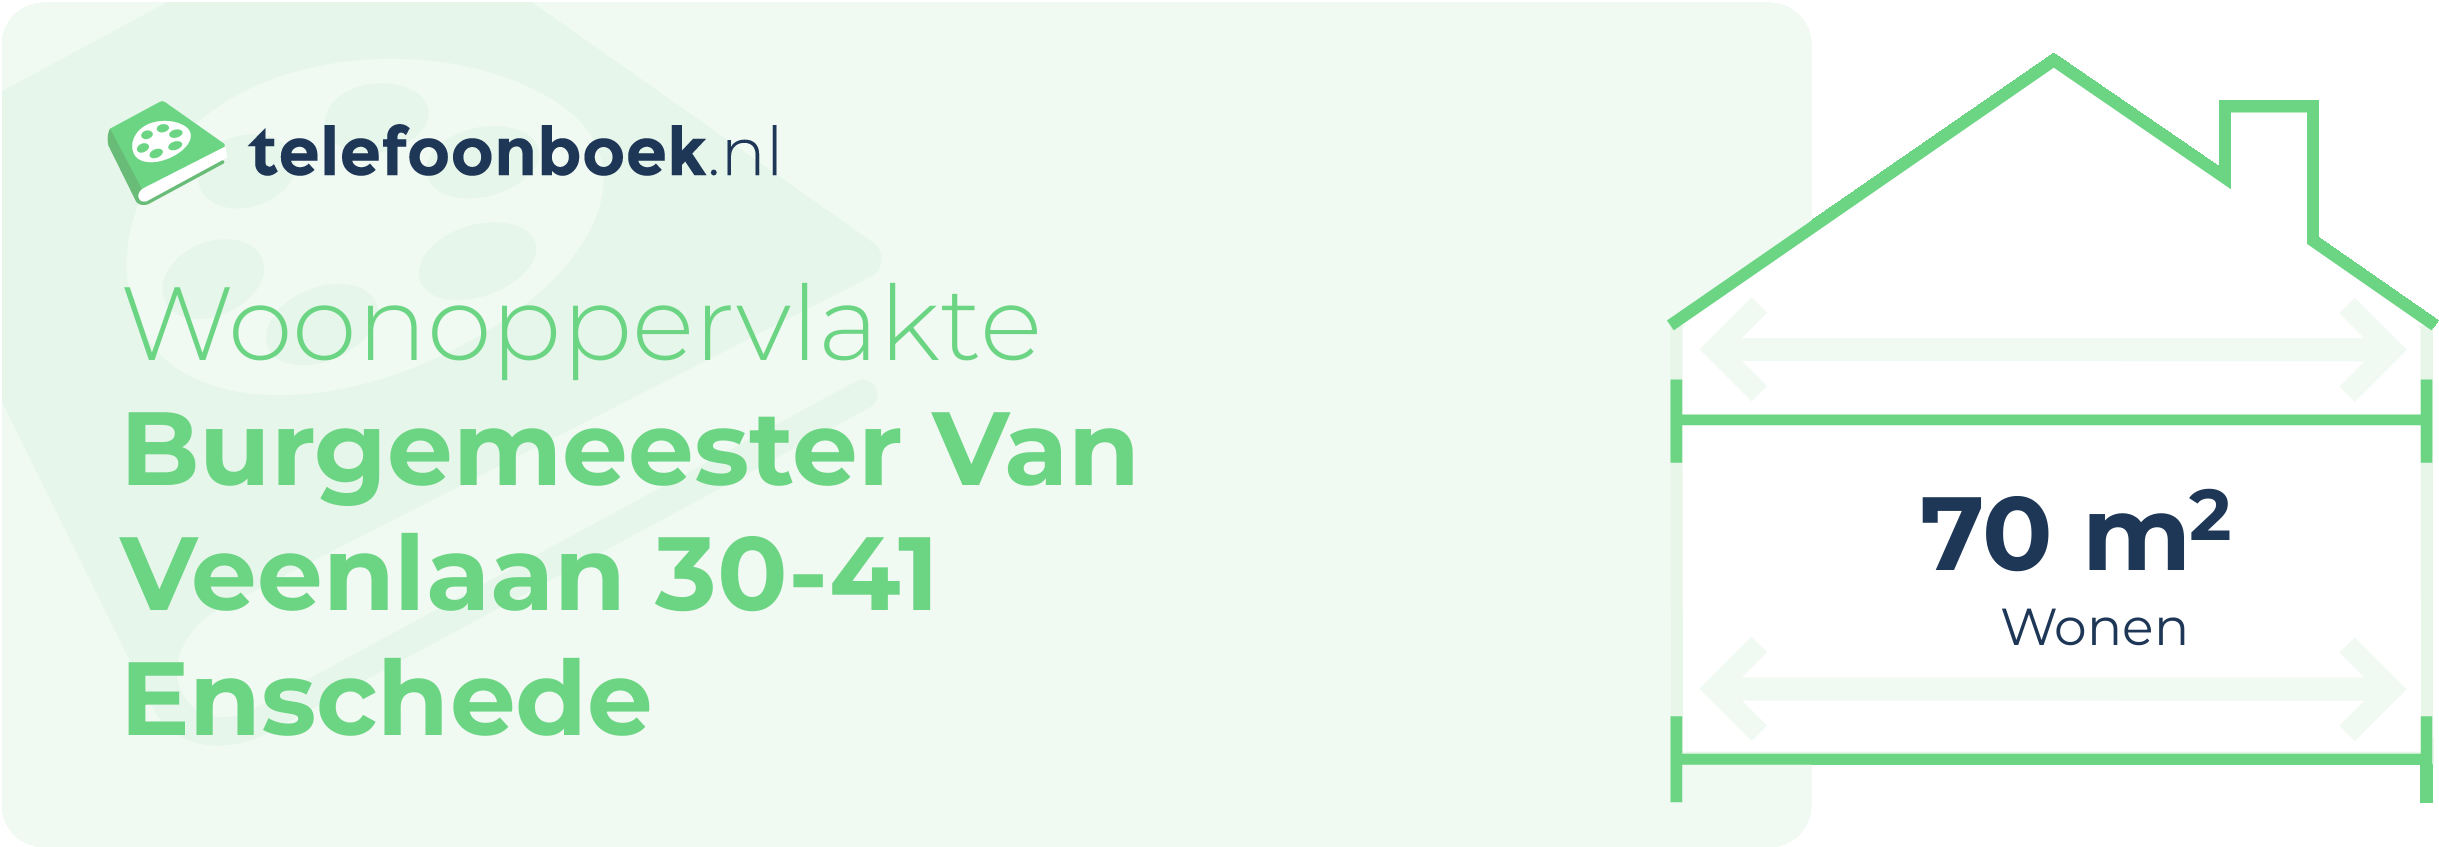 Woonoppervlakte Burgemeester Van Veenlaan 30-41 Enschede